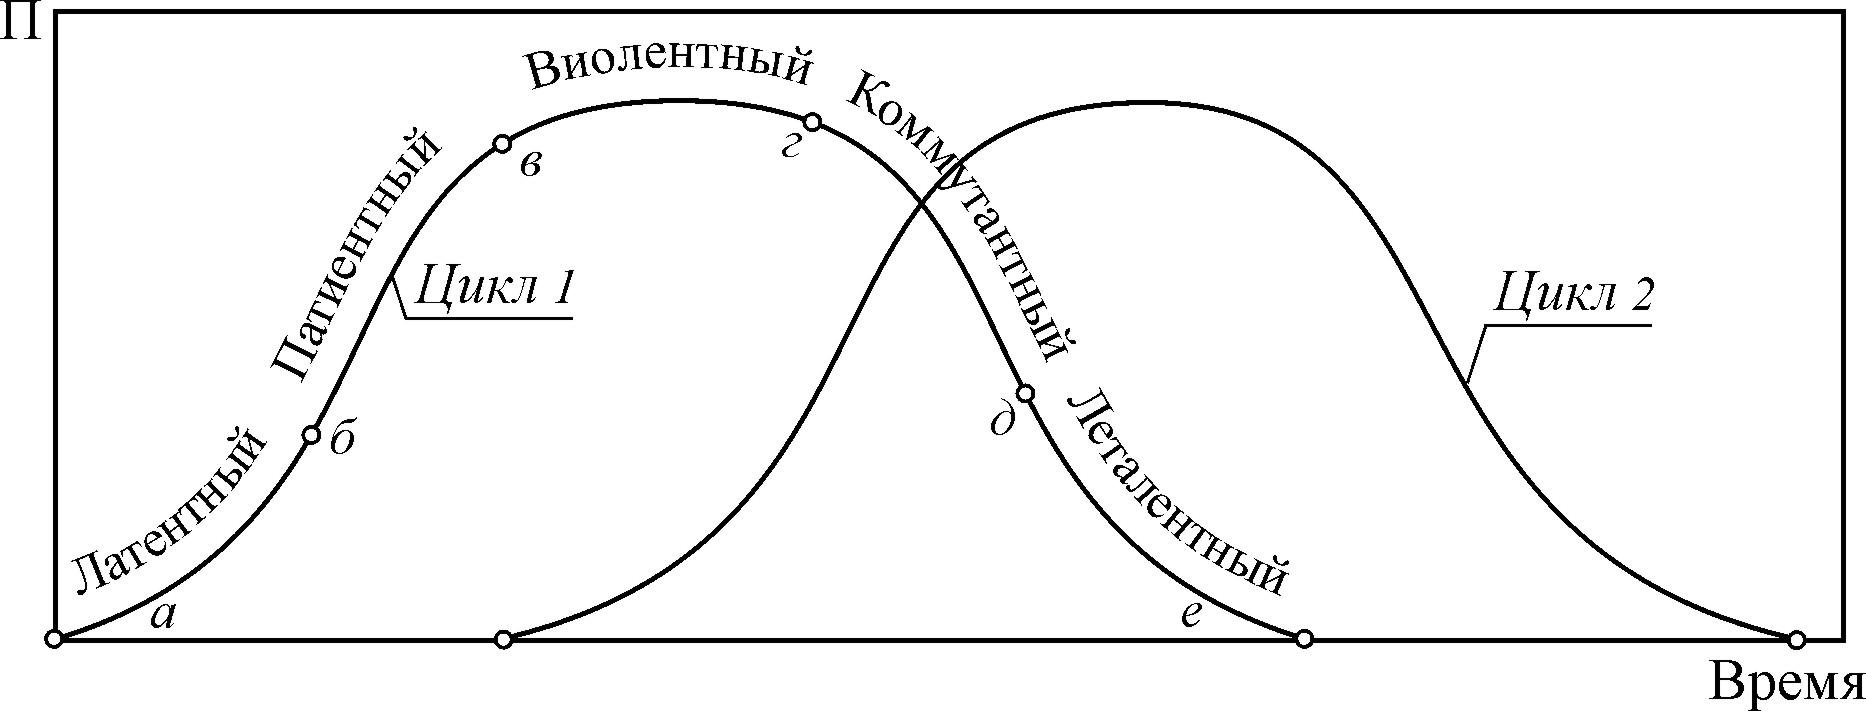 Развитие теории циклов. Жизненный цикл взаимоотношений. Средние циклы взаимодействия. Двойной цикл теория. Устойчивость циклов теория Байера.